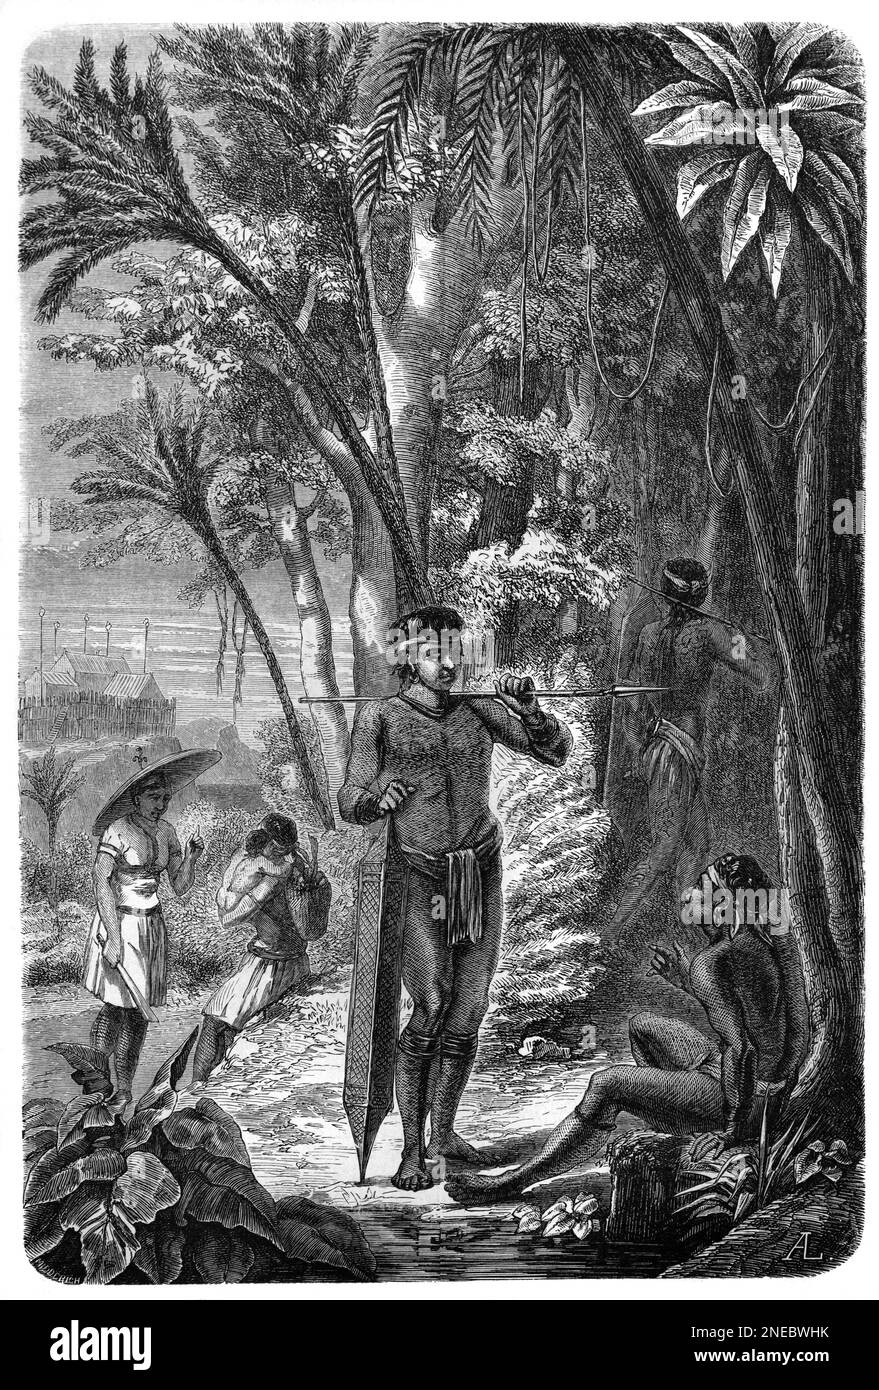 Tagsüber im Tribal-Kleid, darunter Männerjäger oder Jäger, Frauen und Kinder im Regenwaldborner. Vintage Engravin oder Illustraton 1862 Stockfoto